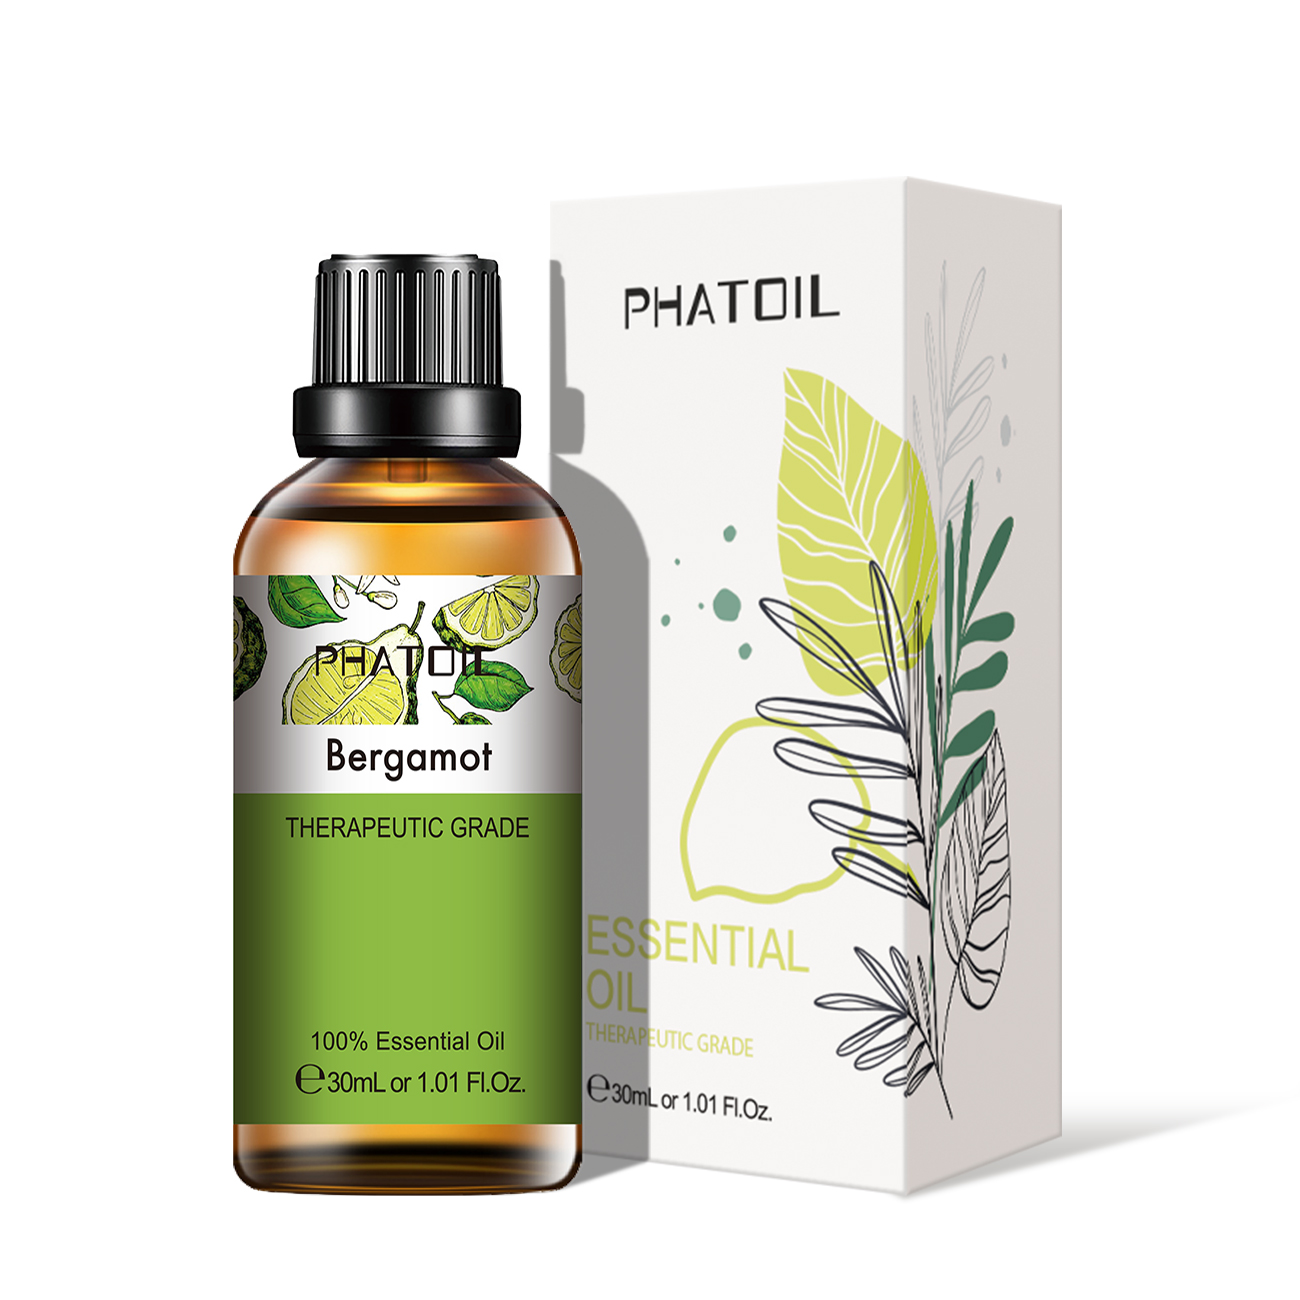 PHATOIL 30ml Pure Essential Oils --- Citrus Scent